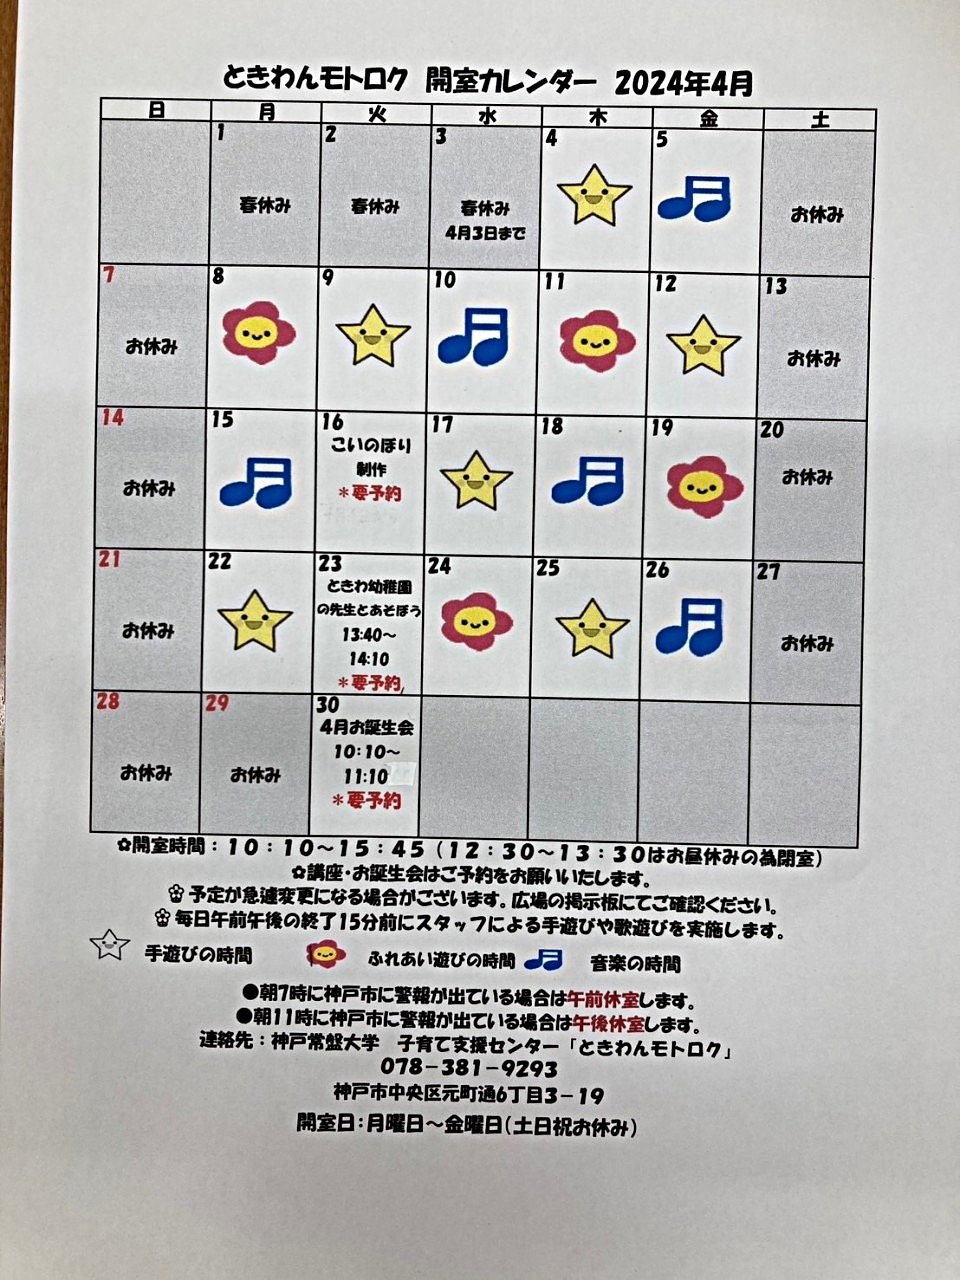 Calendário de abril Tokiwan Motoroku